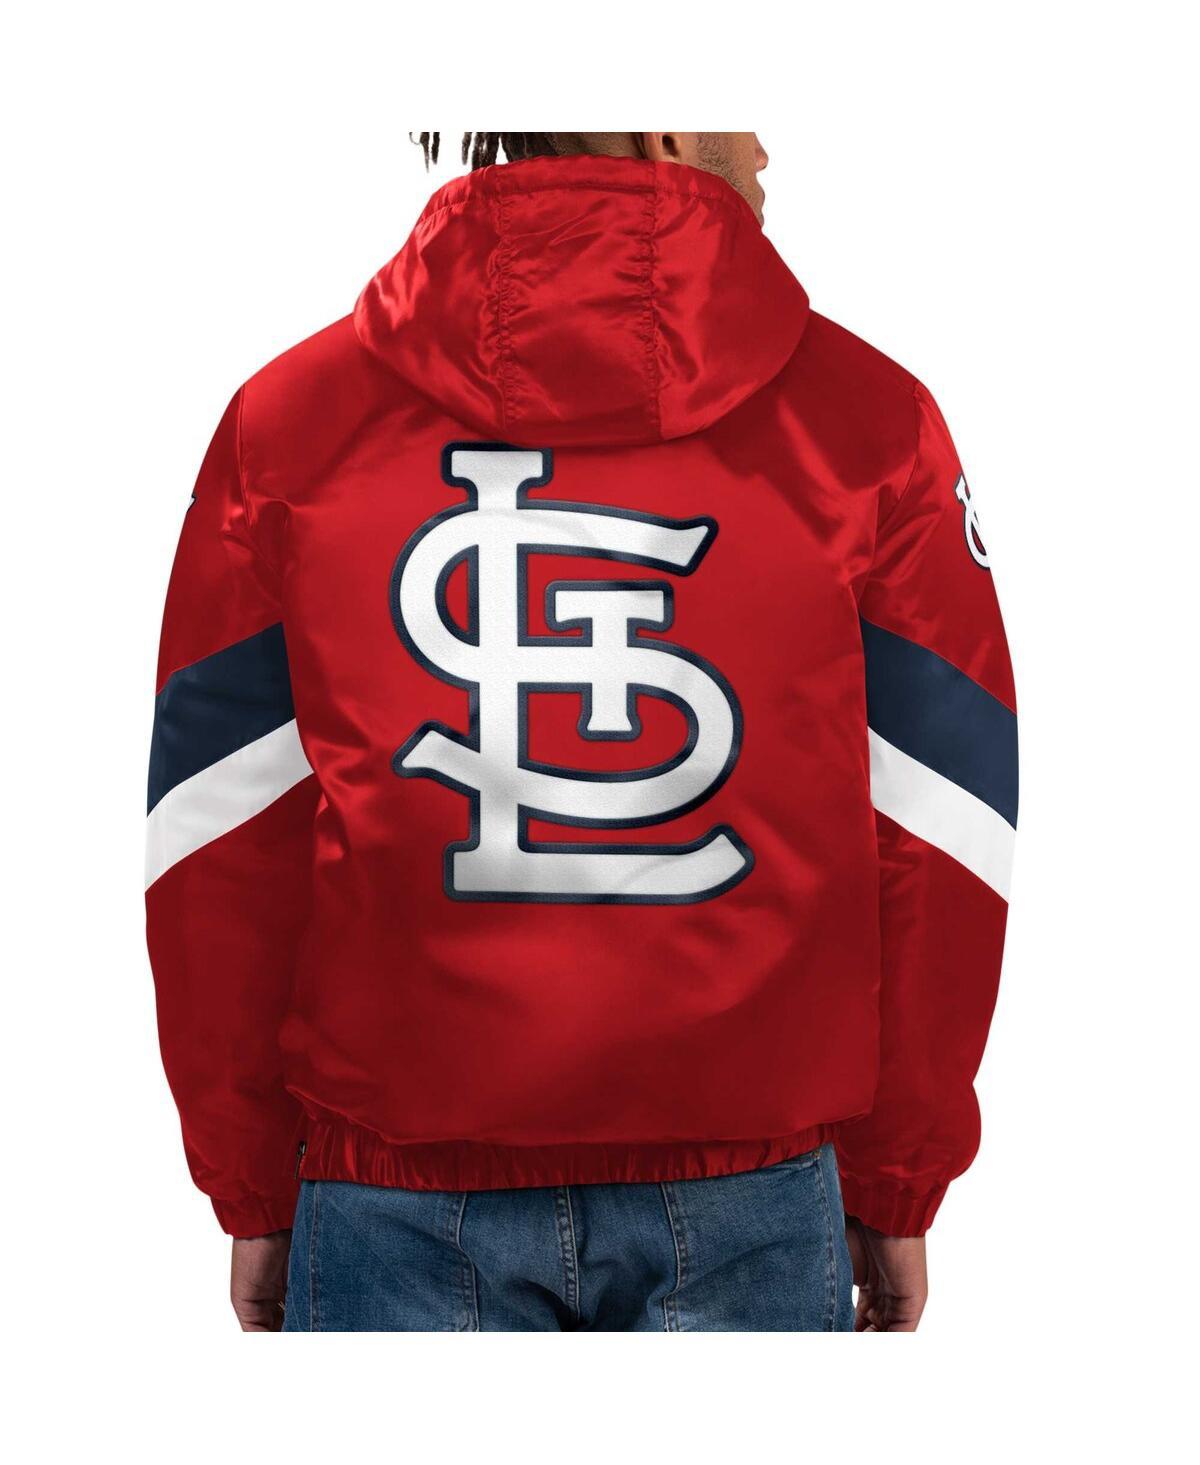 Men's St. Louis Cardinals Starter Navy Slider Satin Full-Snap Varsity Jacket